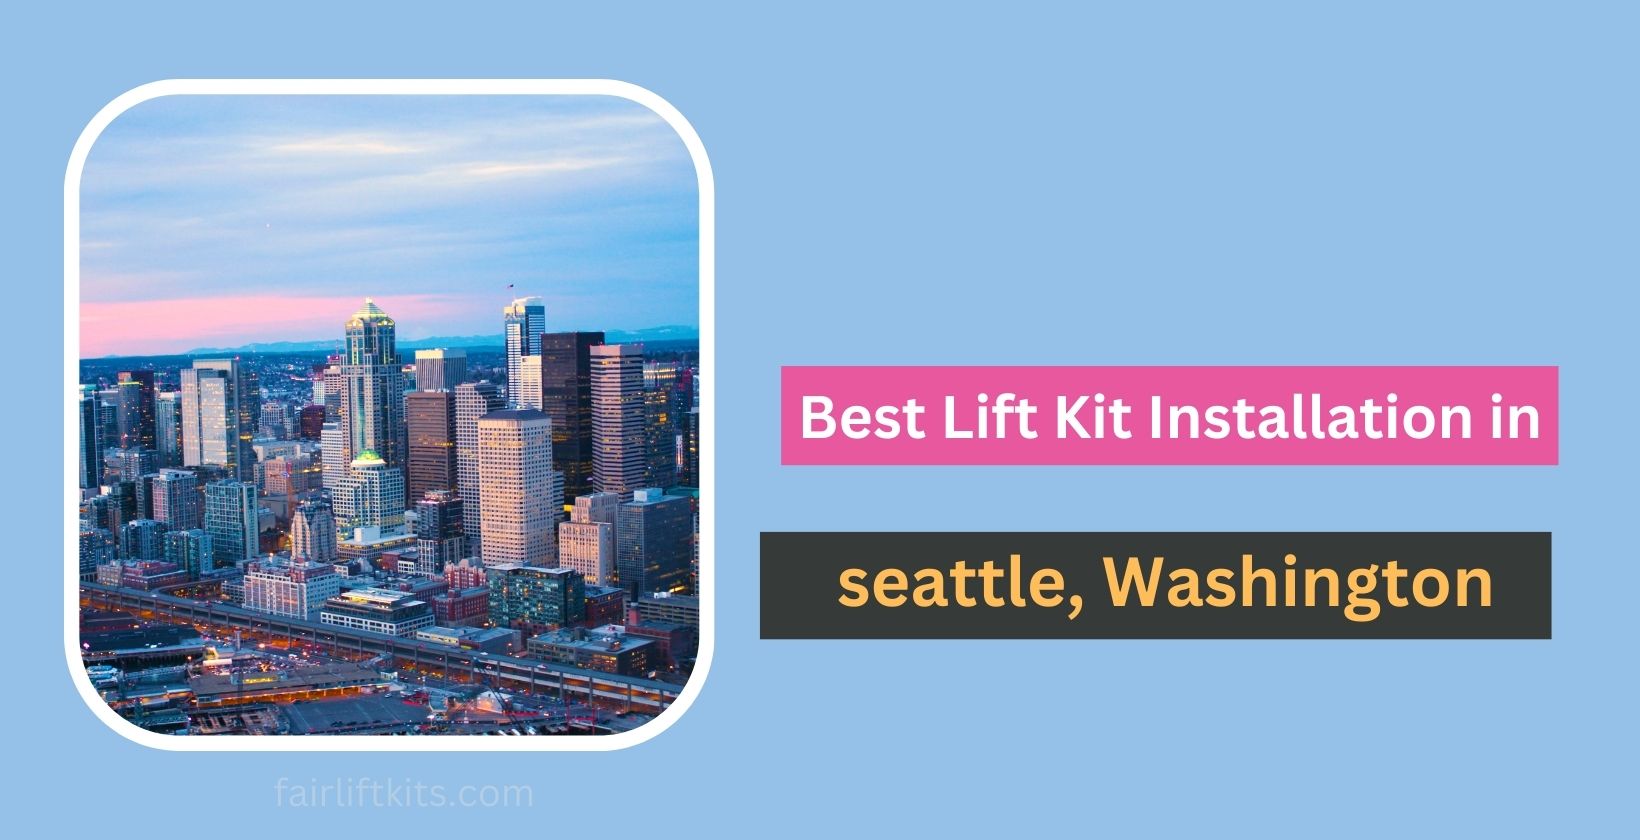 10 Best Lift Kit Installation in Seattle